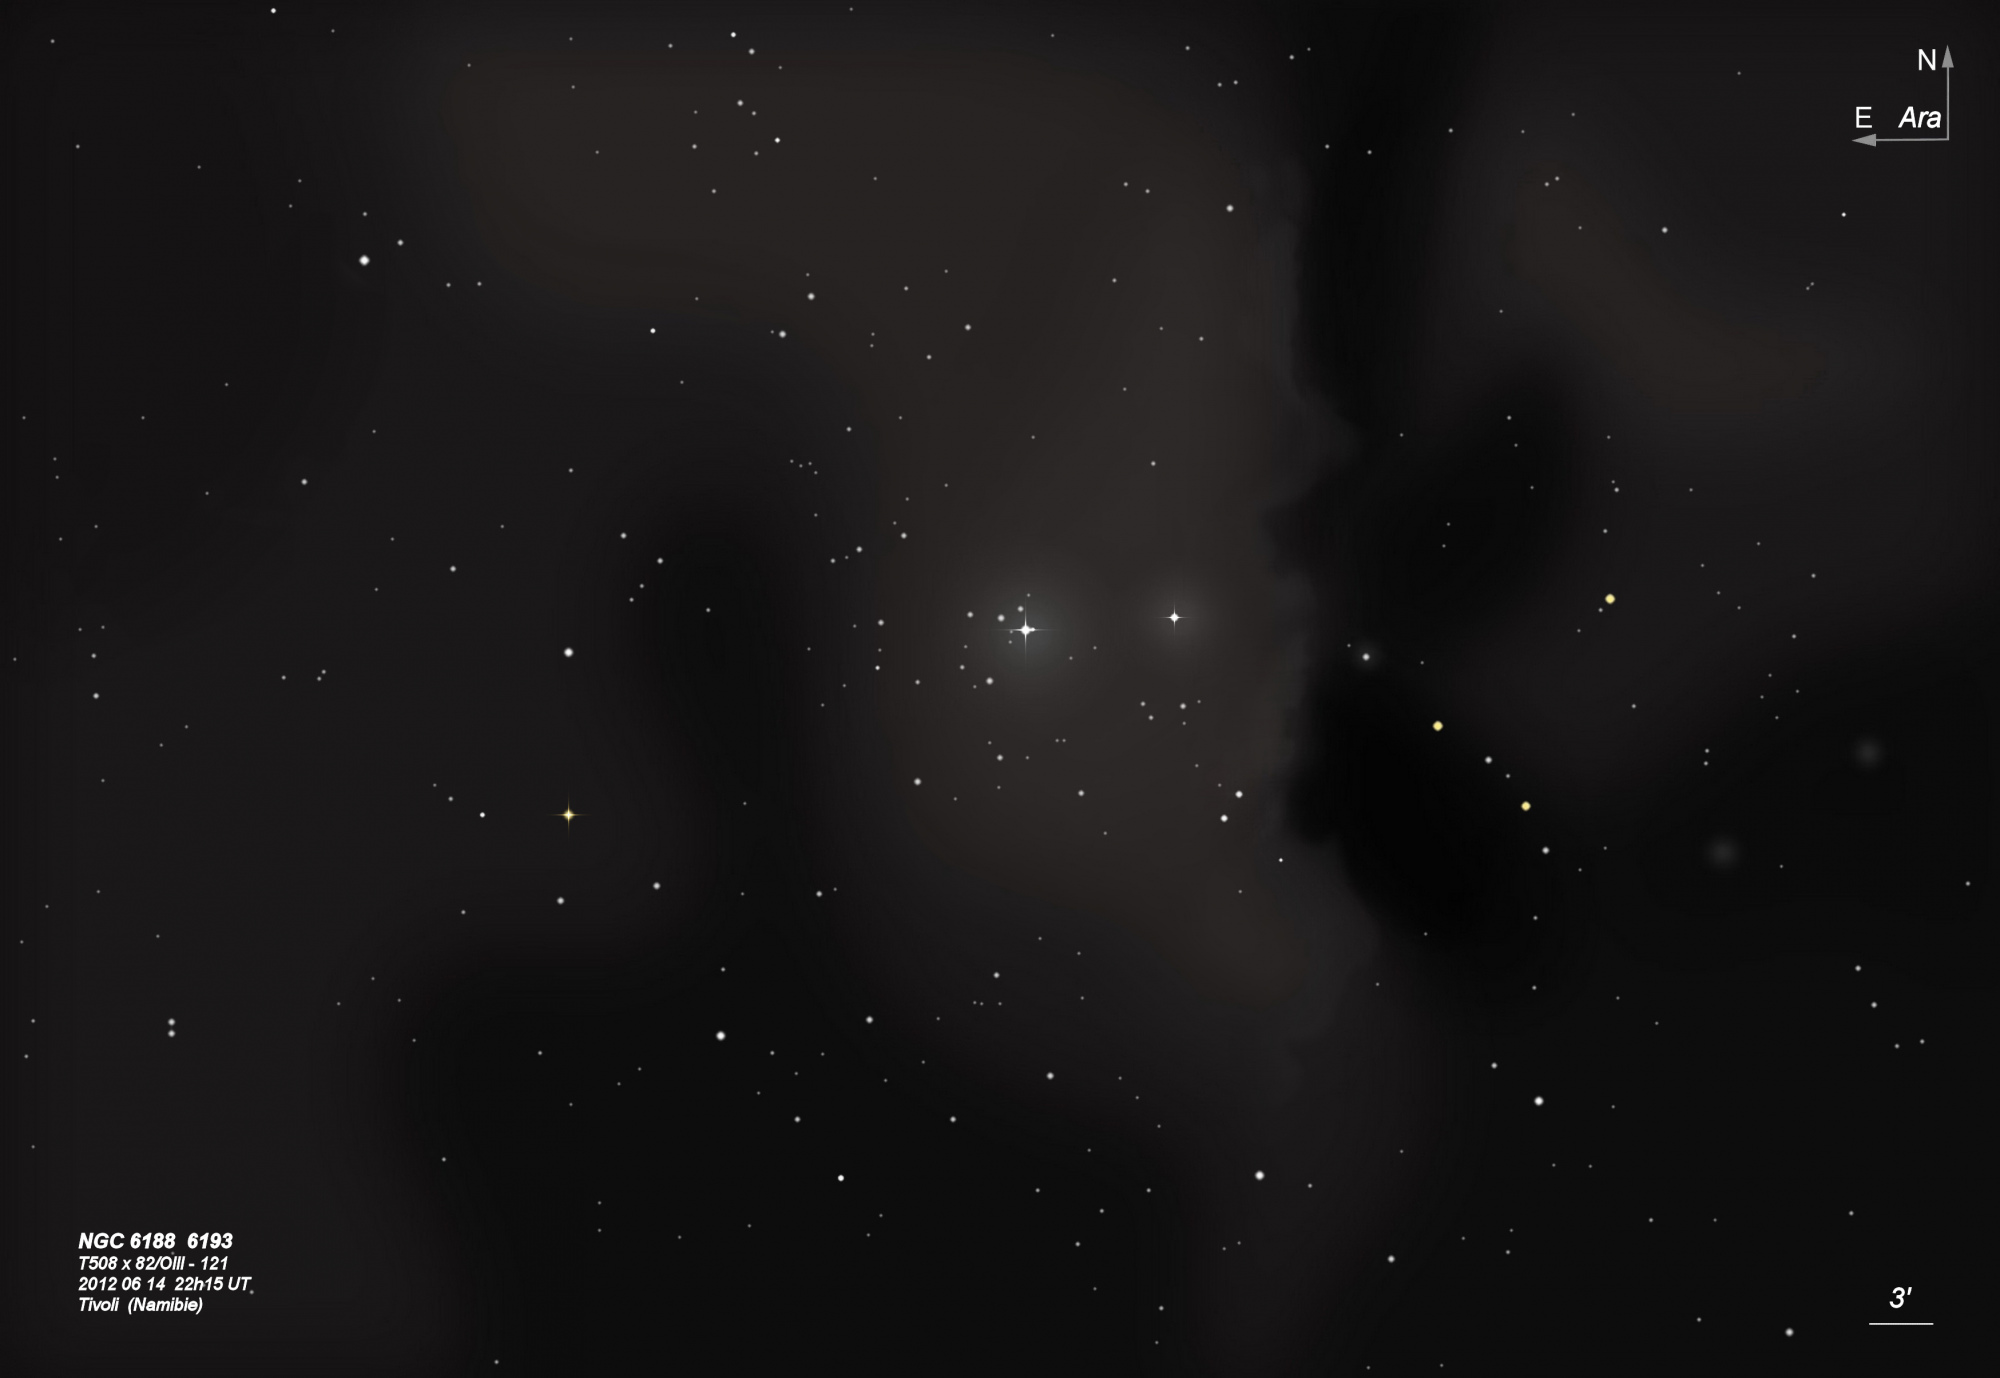 NGC 6188 93  T508  BL 2012 06 14.jpg